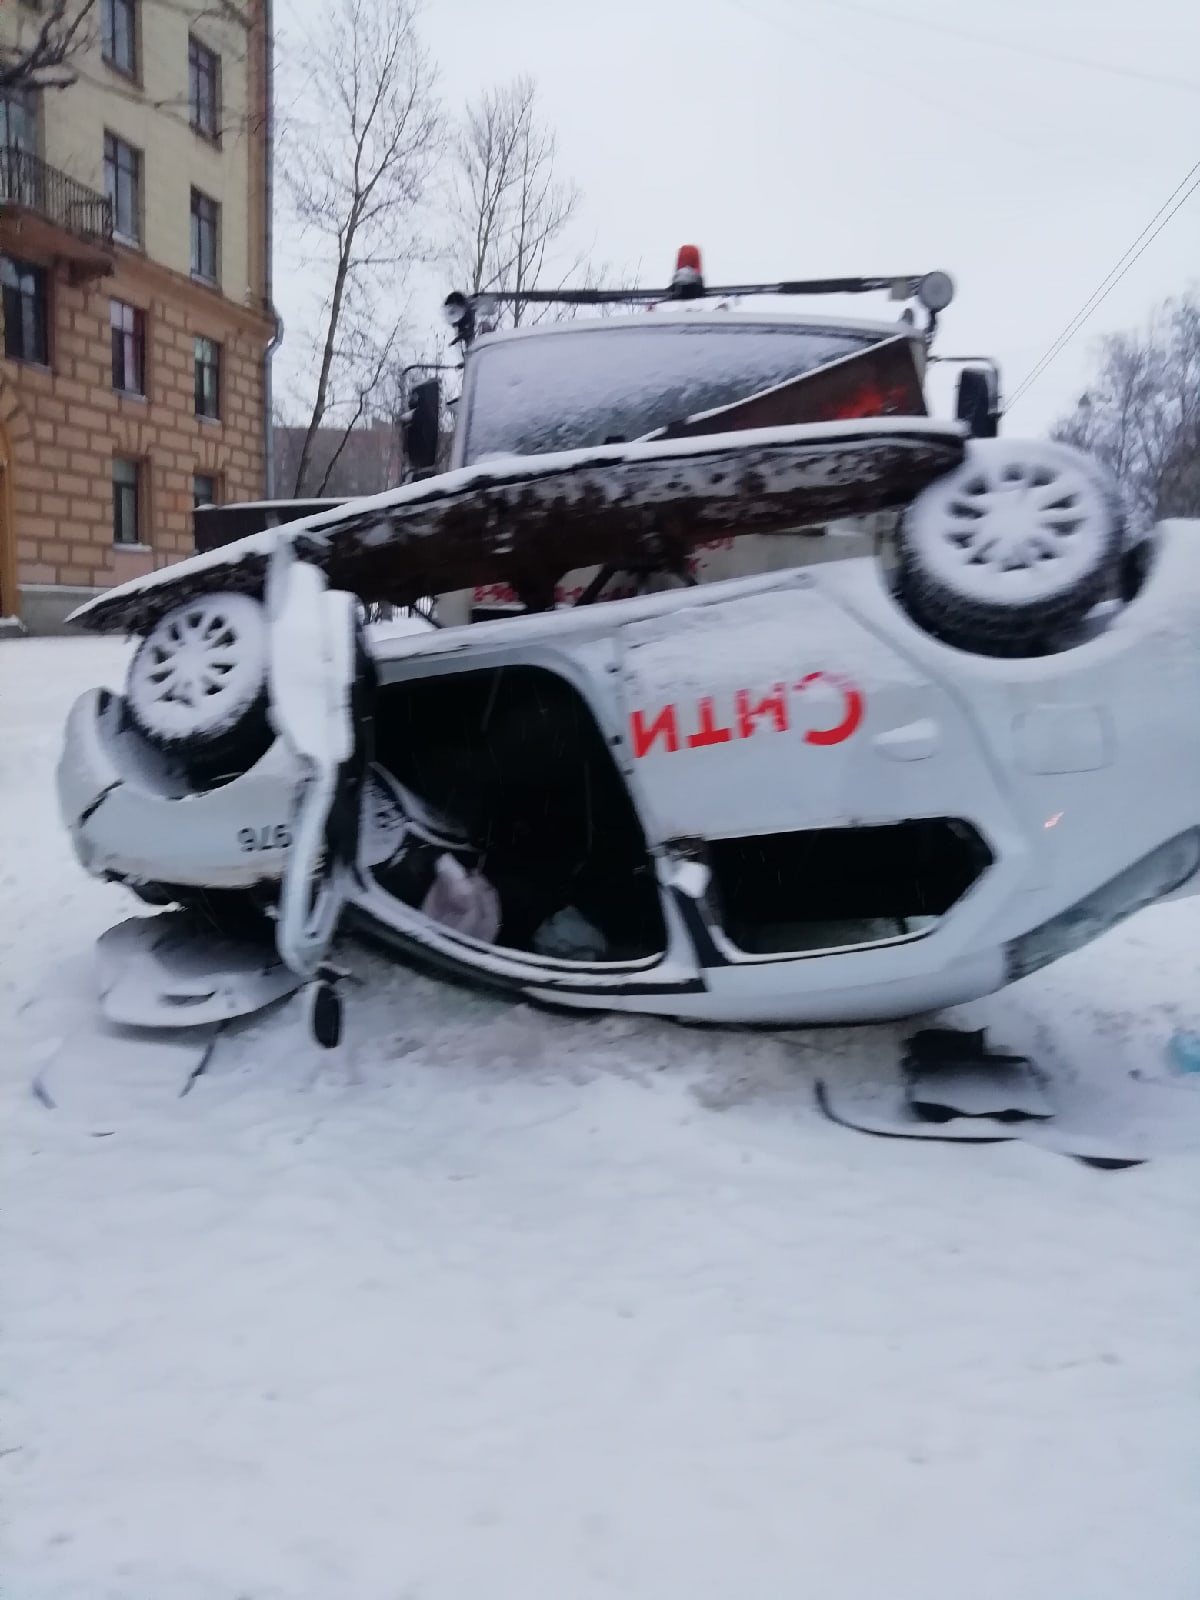 Пескоразбрасыватель в Петербурге перевернул такси, которое до этого обидело другого водителя